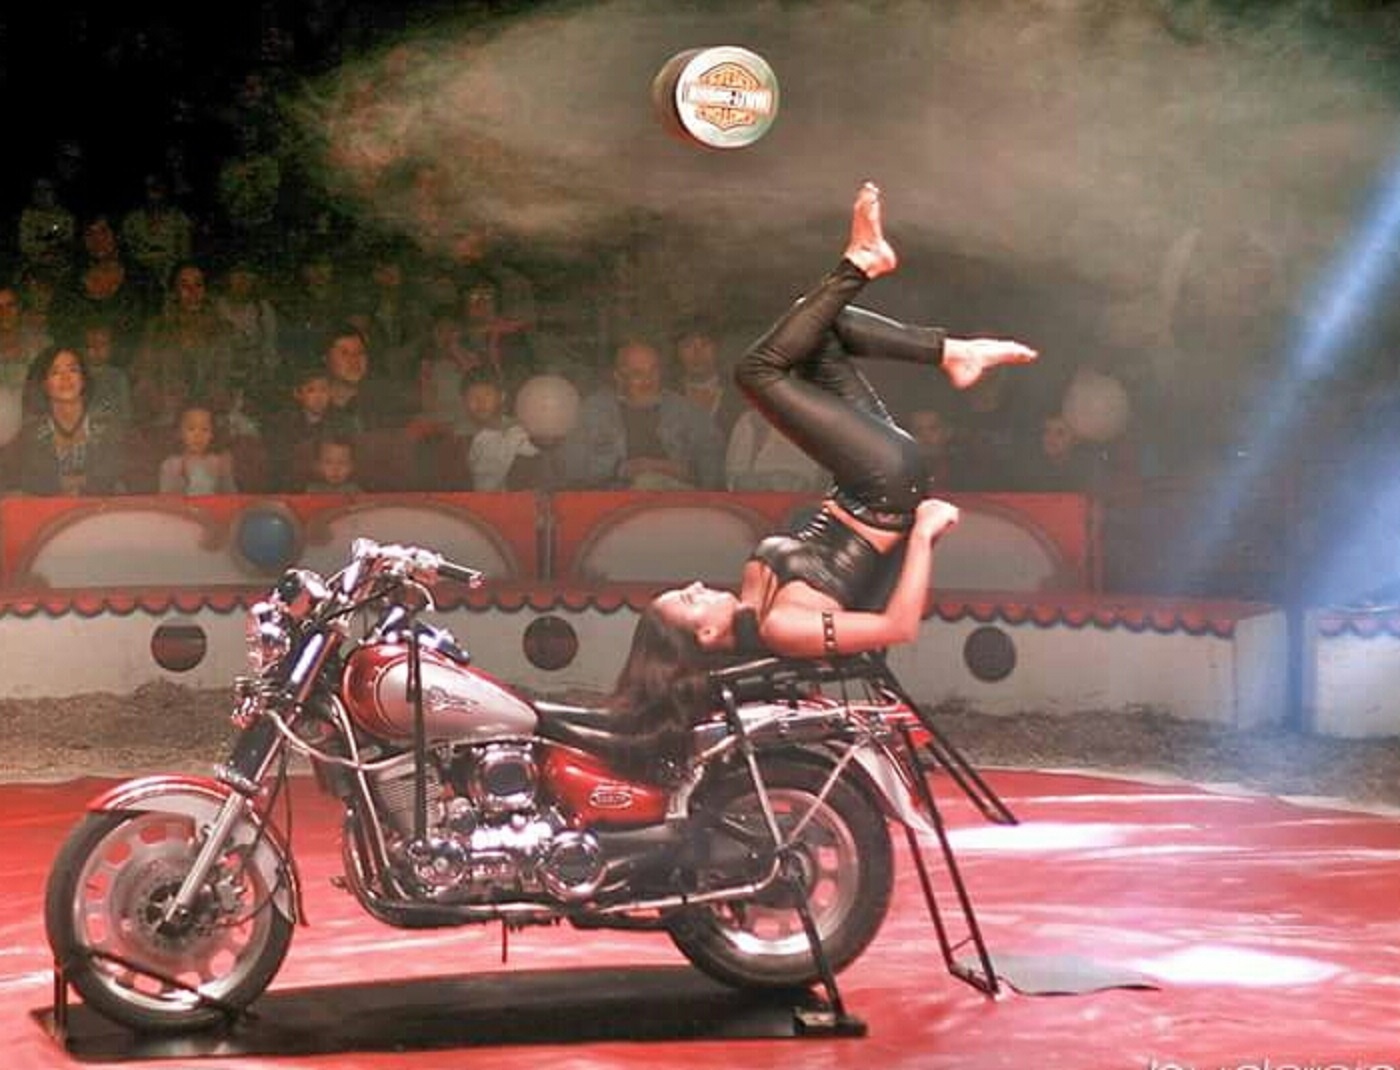 Au programme du spectacle figure notamment un numéro d'antipodisme sur une moto.